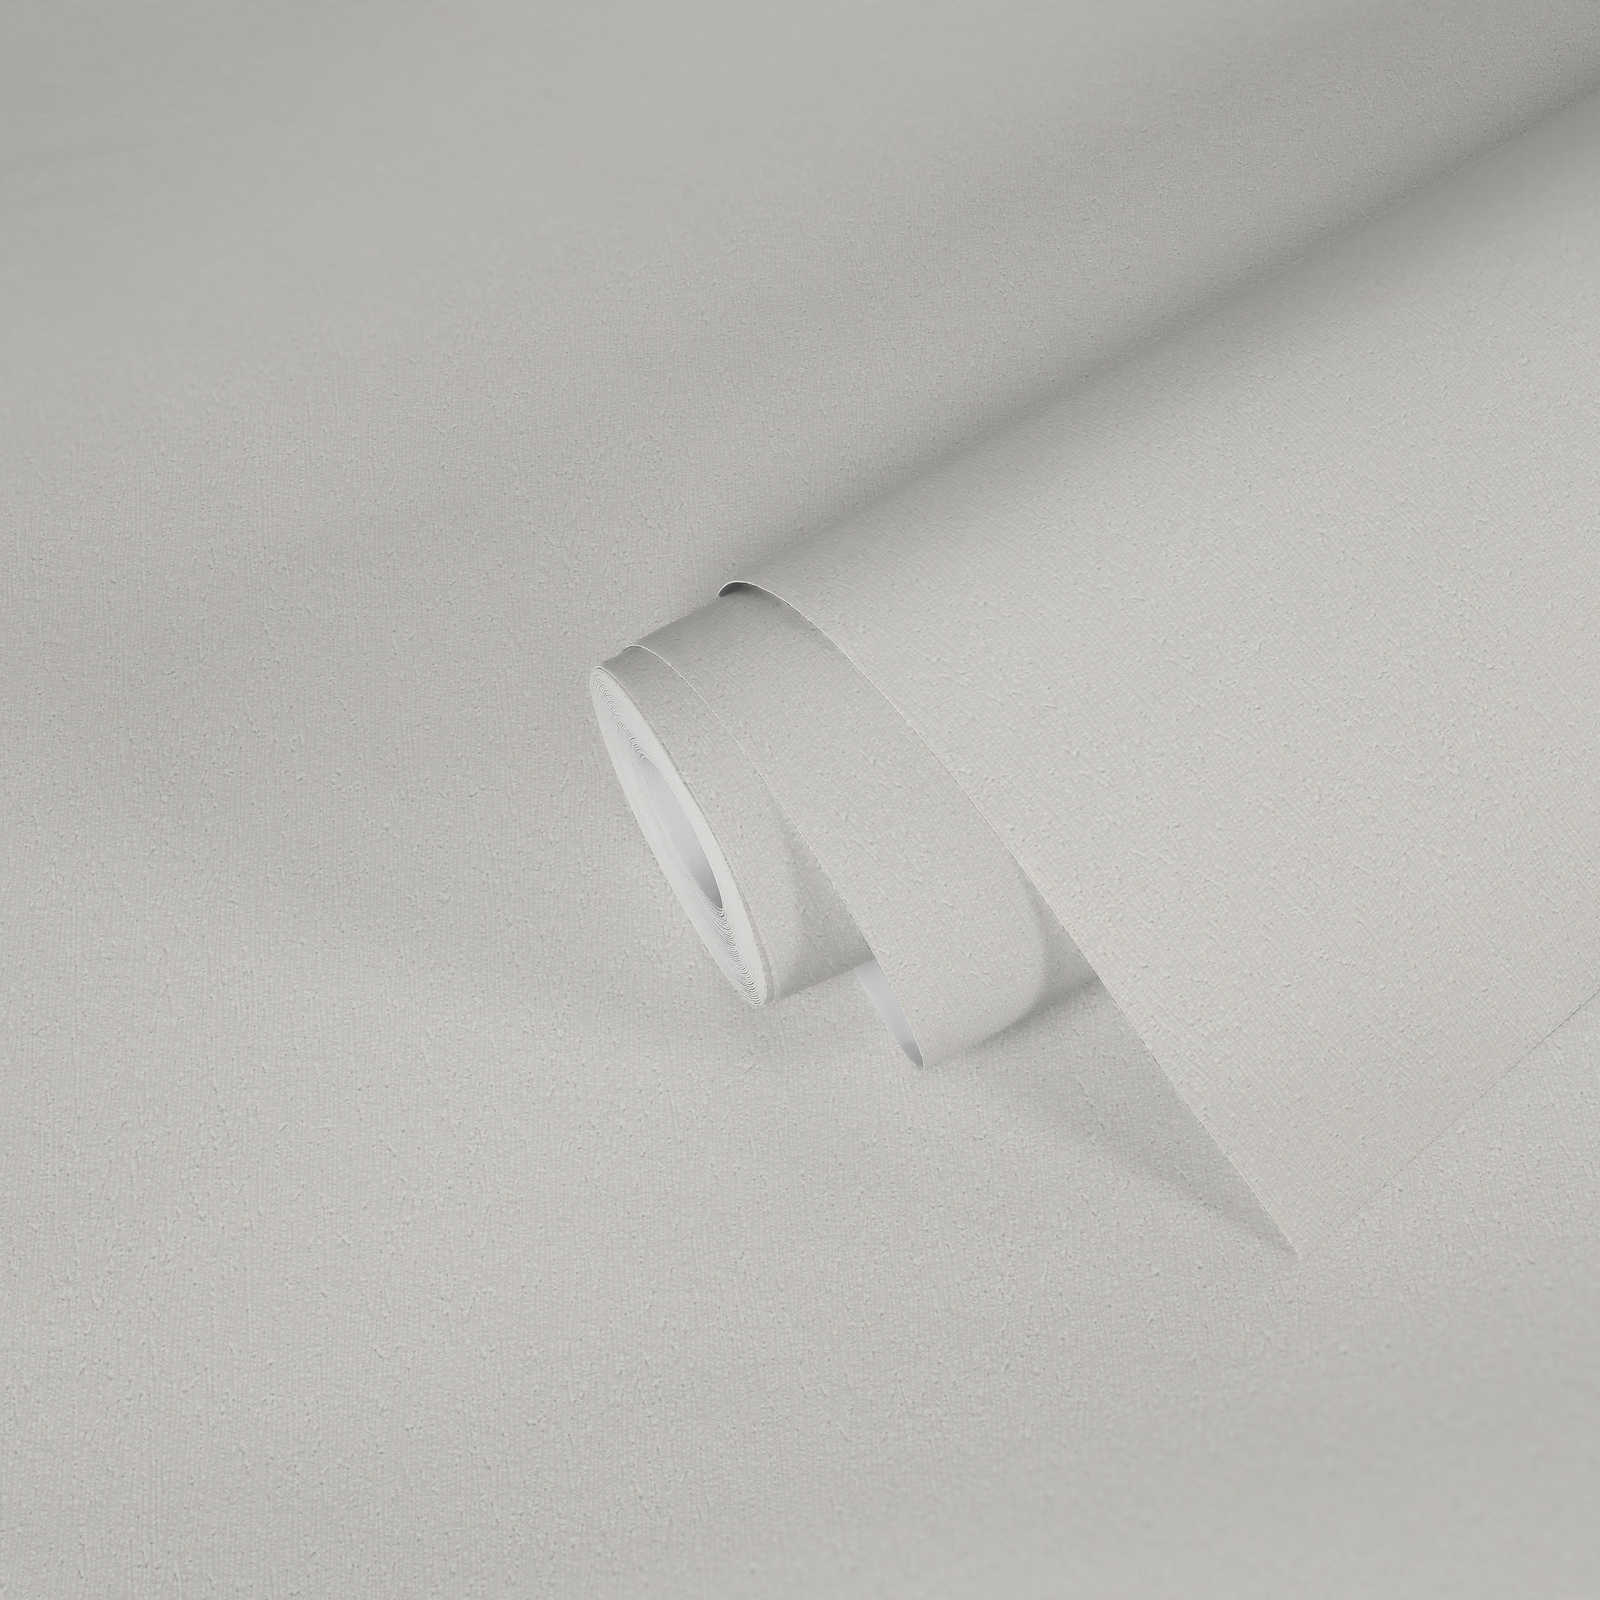             Vliestapete mit leichter Struktur überstreichbar – Weiß
        